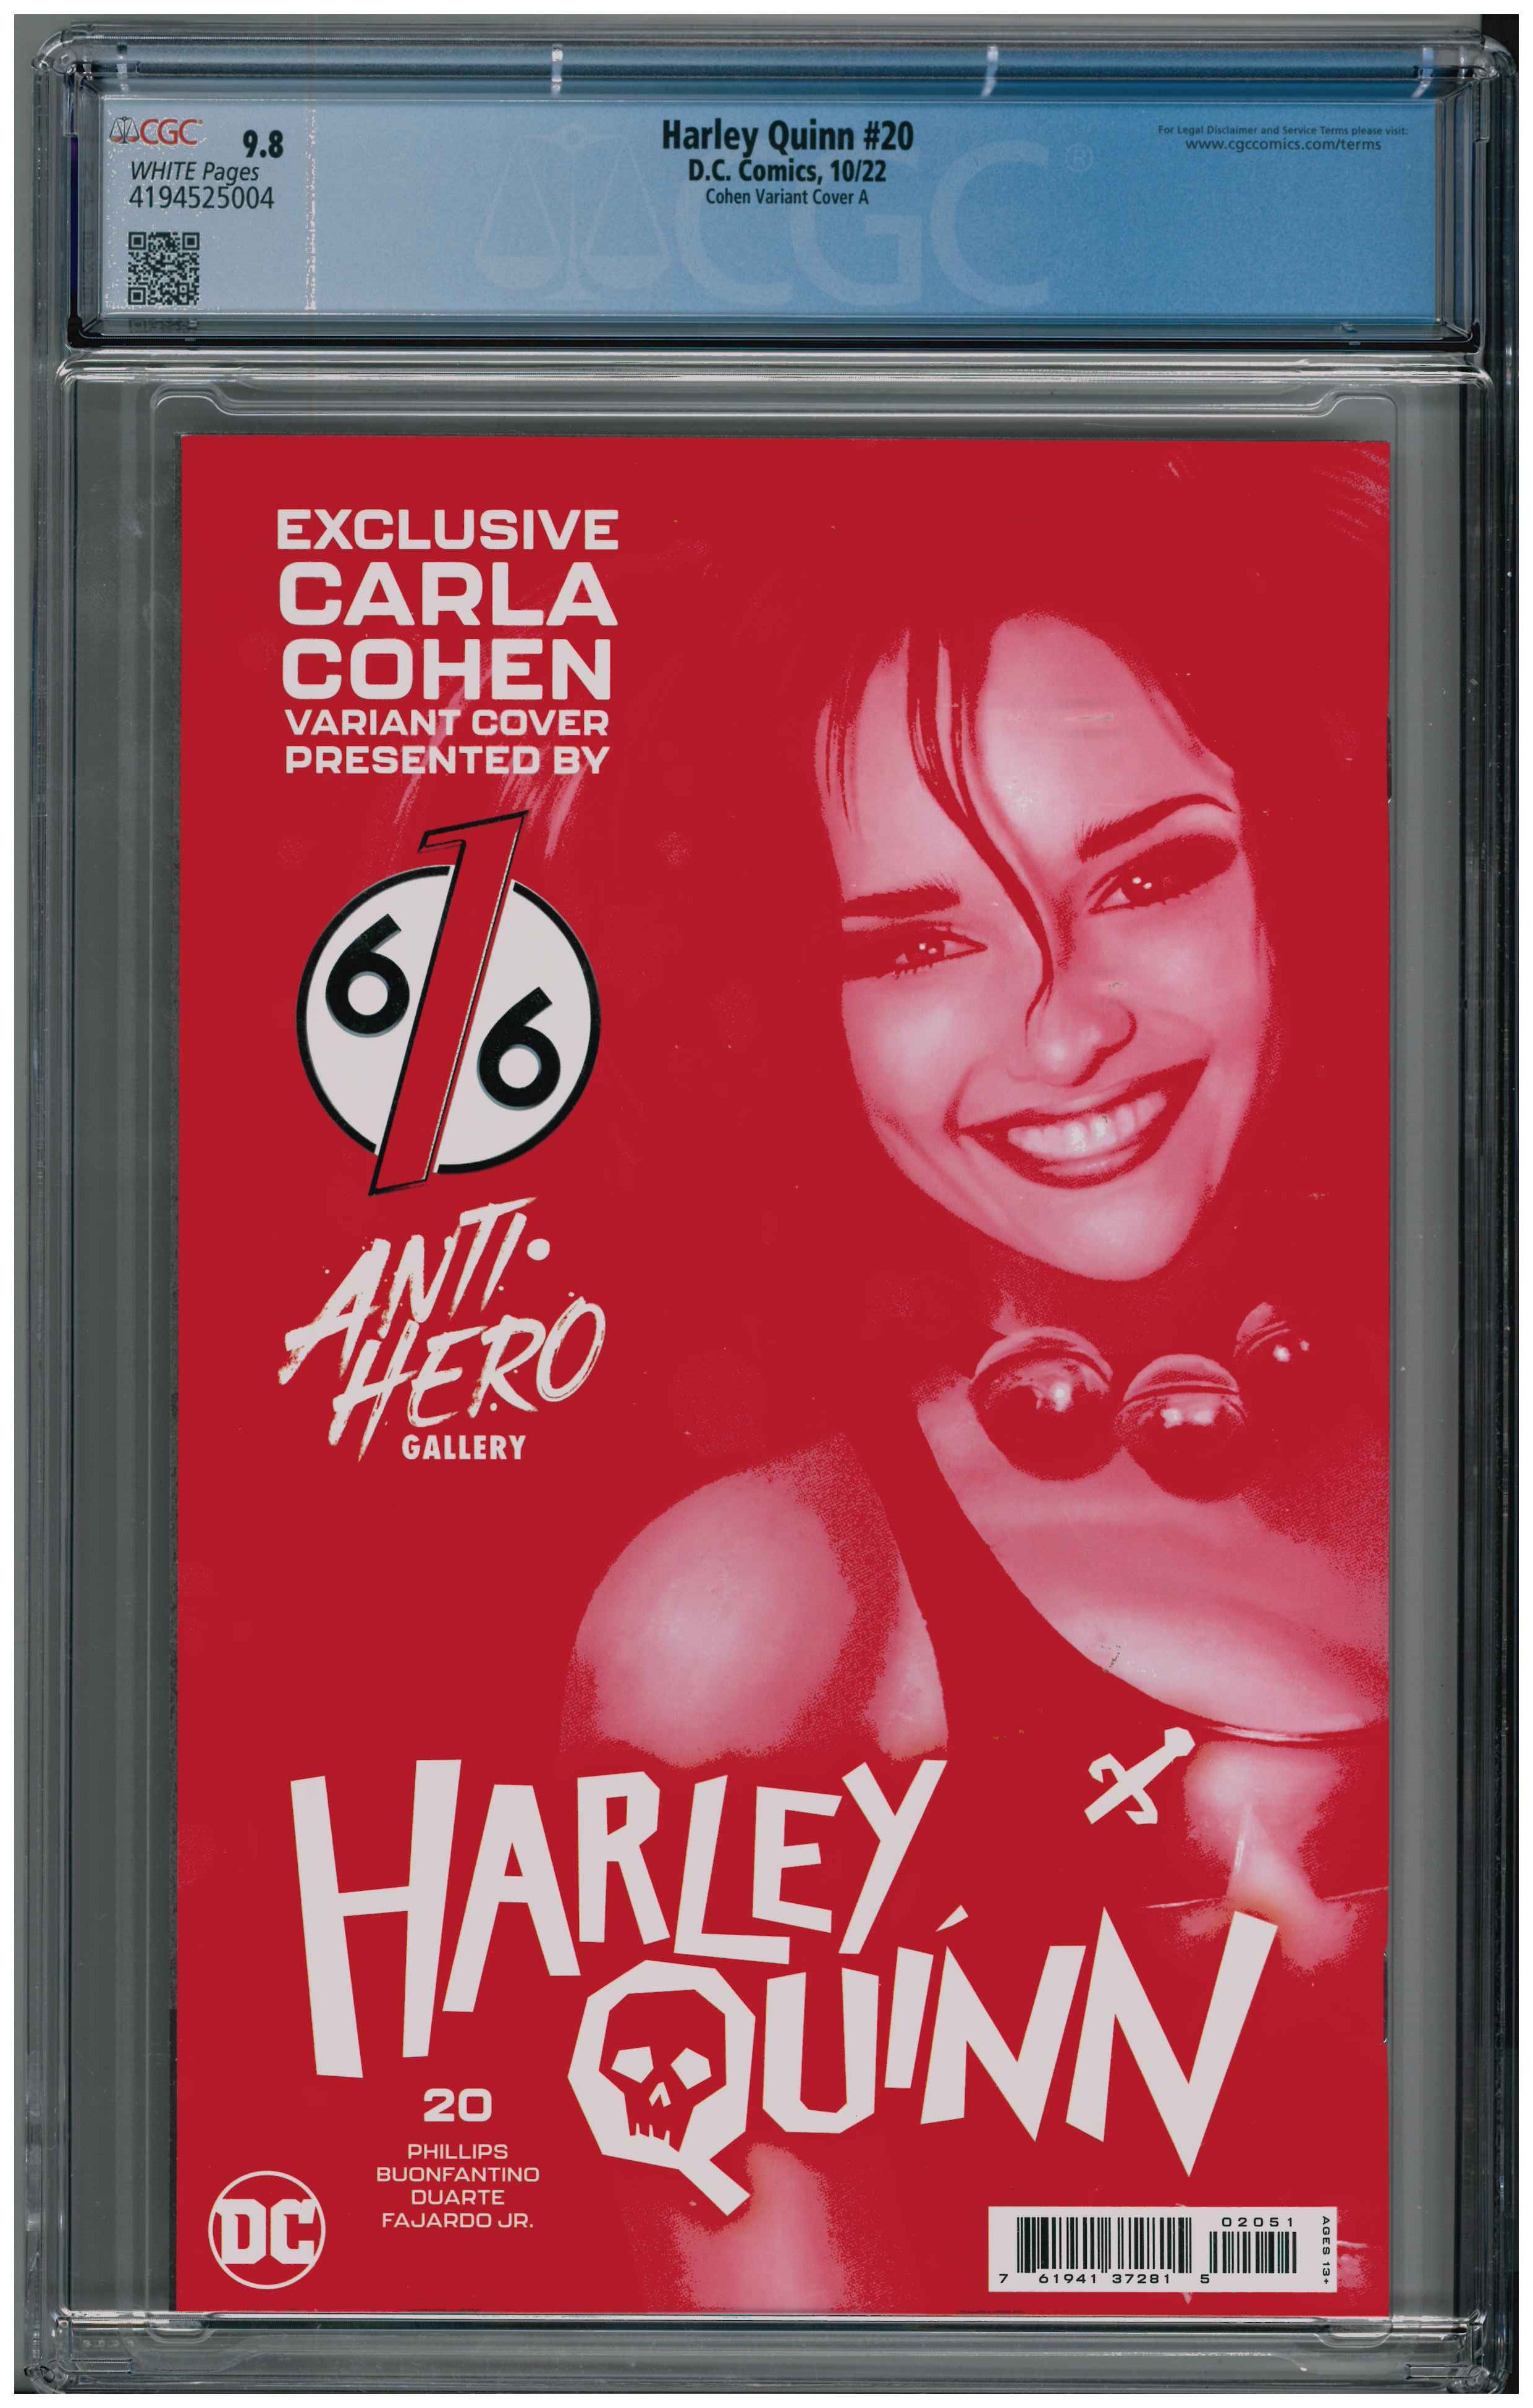 Harley Quinn #20 backside